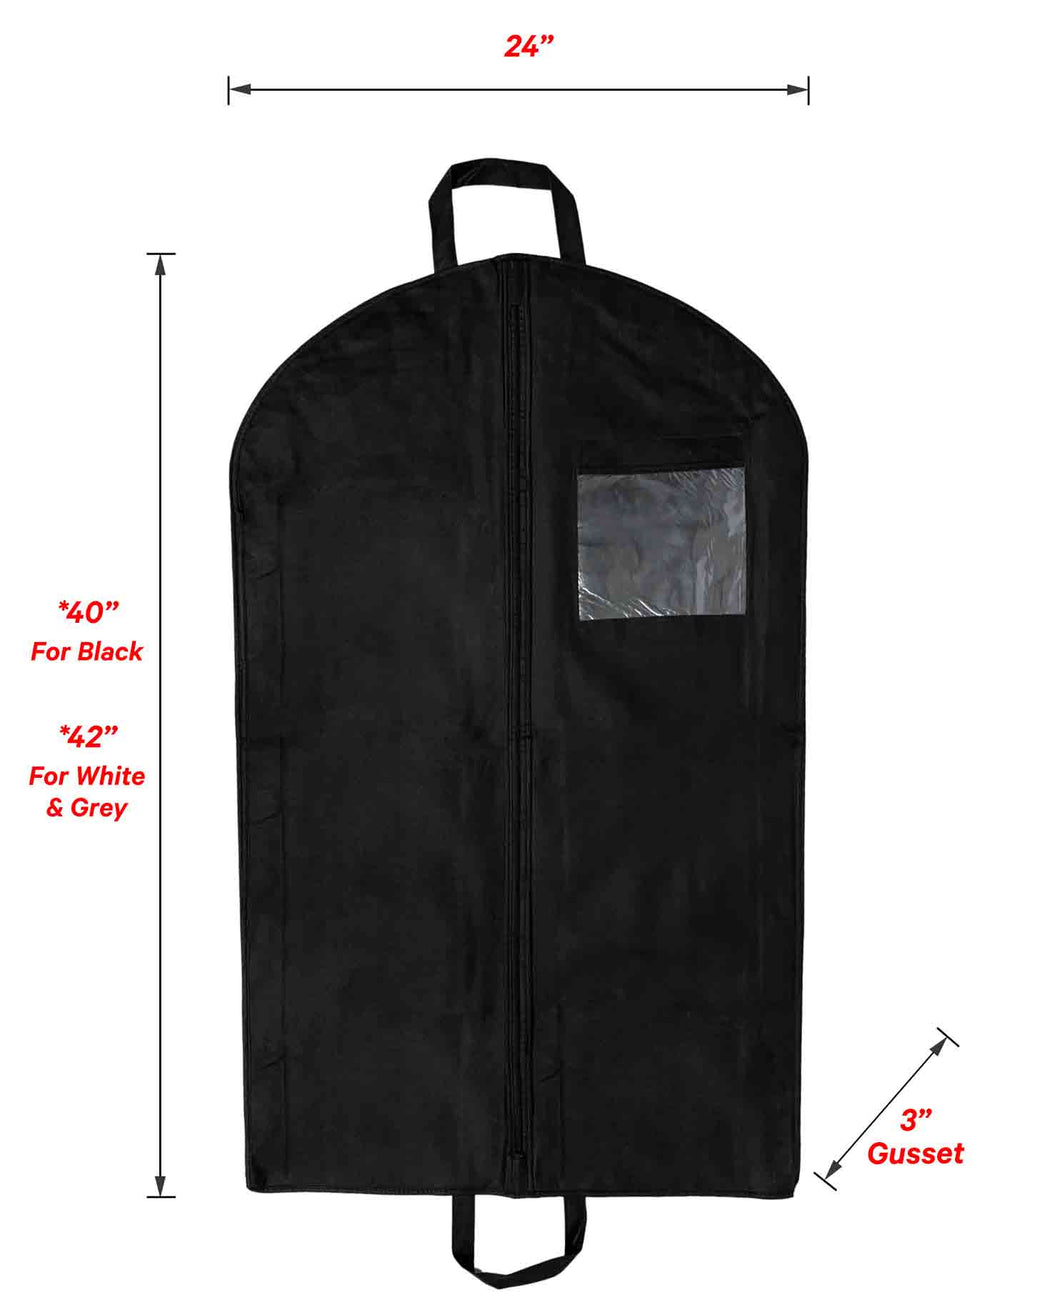 Non-Woven Garment Bag - 24" x 40/42" x 3"